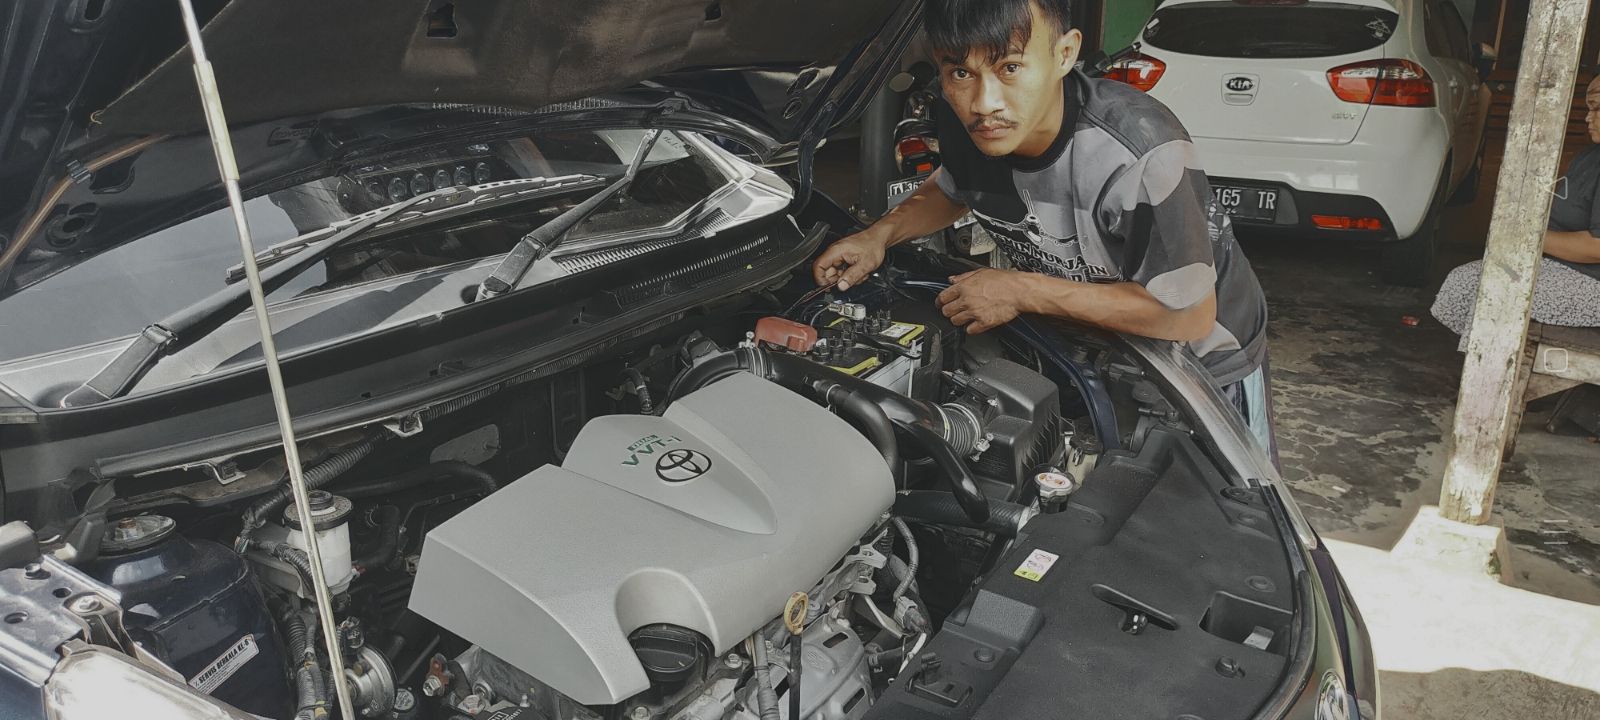 Bengkel mobil di Subang, Eka mekanik muda dari kampung Tanggulun Kalijati dijuluki Bocah Ajaib mampu perbaiki mobil-mobil mewah bermasalah hingga kembali pada kondisi normal.